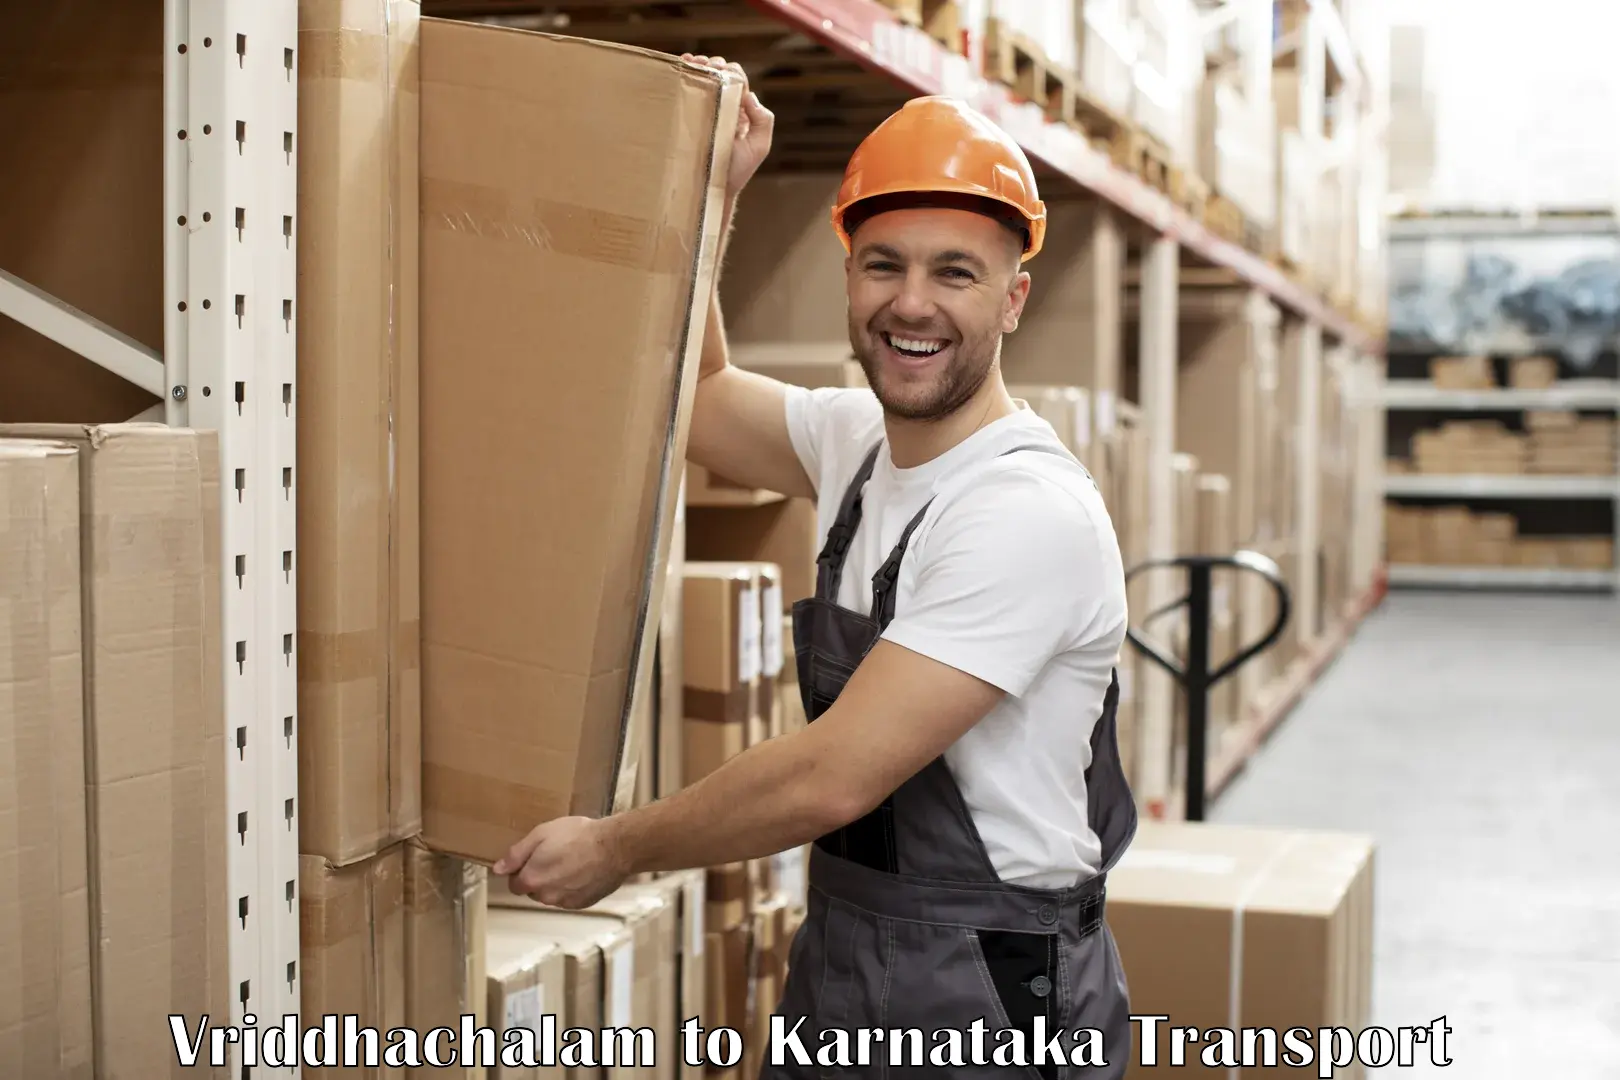 Truck transport companies in India Vriddhachalam to Uttara Kannada